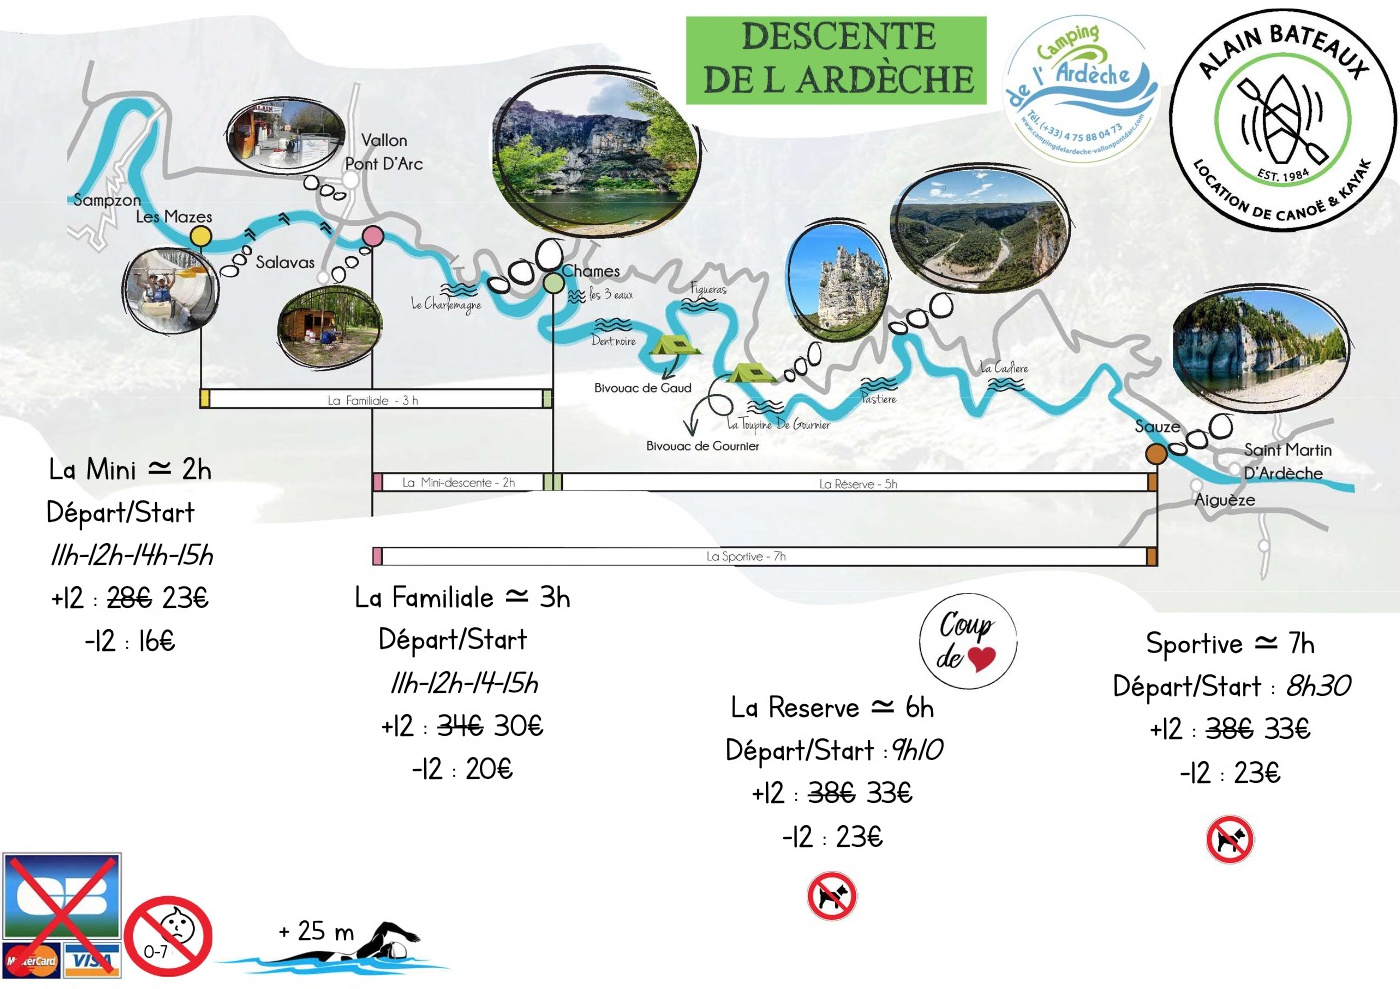 Location de canoës descente de l’Ardèche